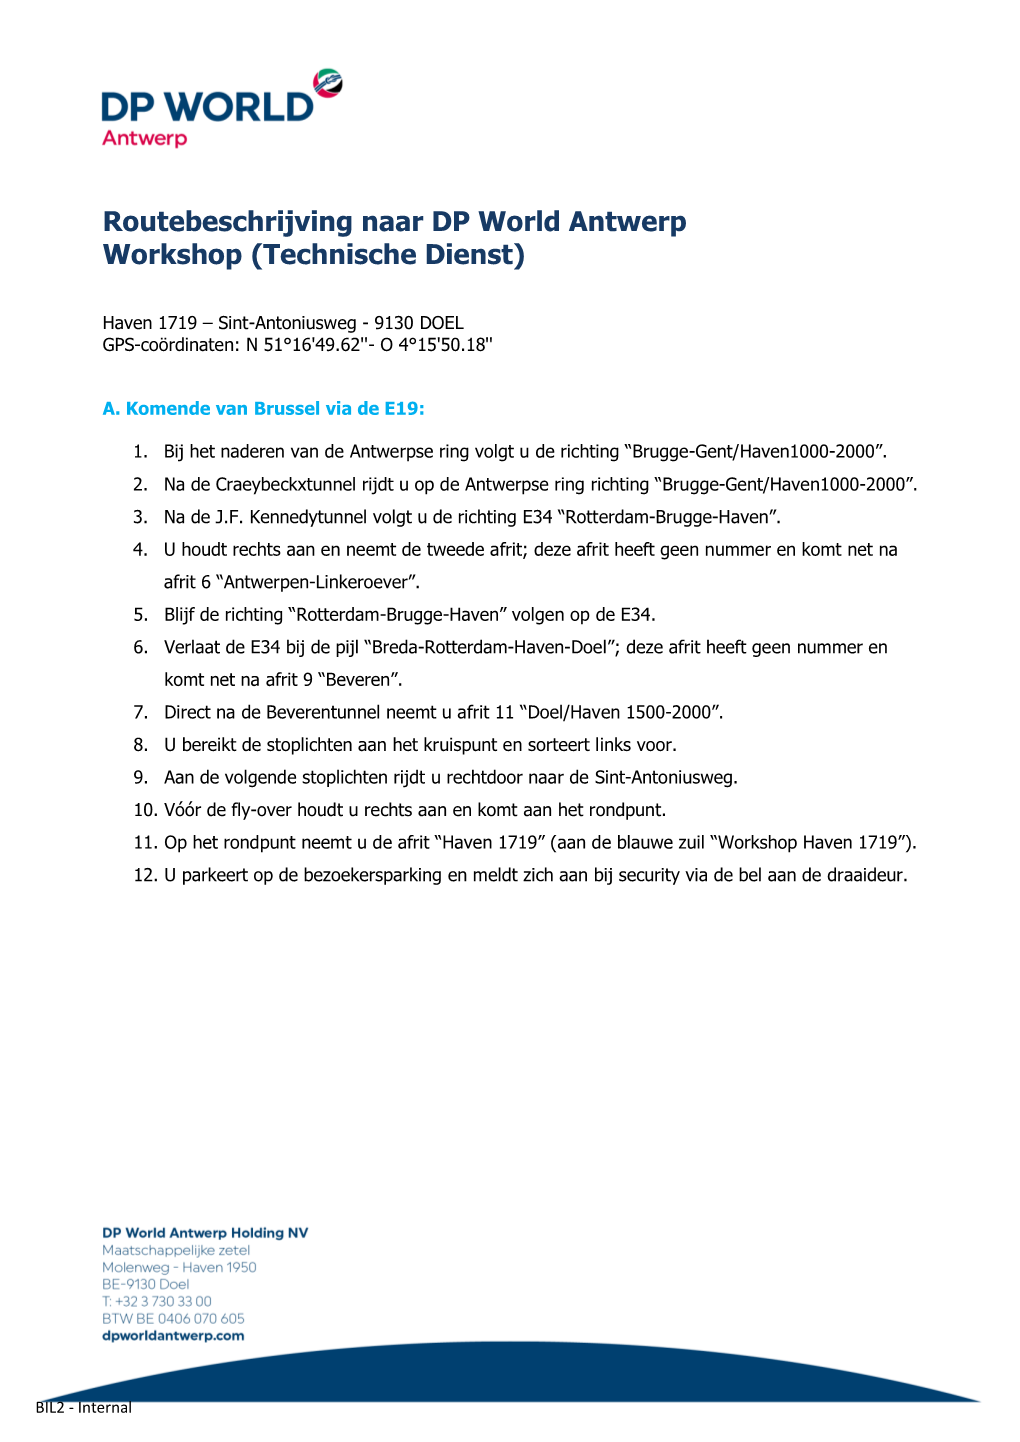 Routebeschrijving Naar DP World Antwerp Workshop (Technische Dienst)